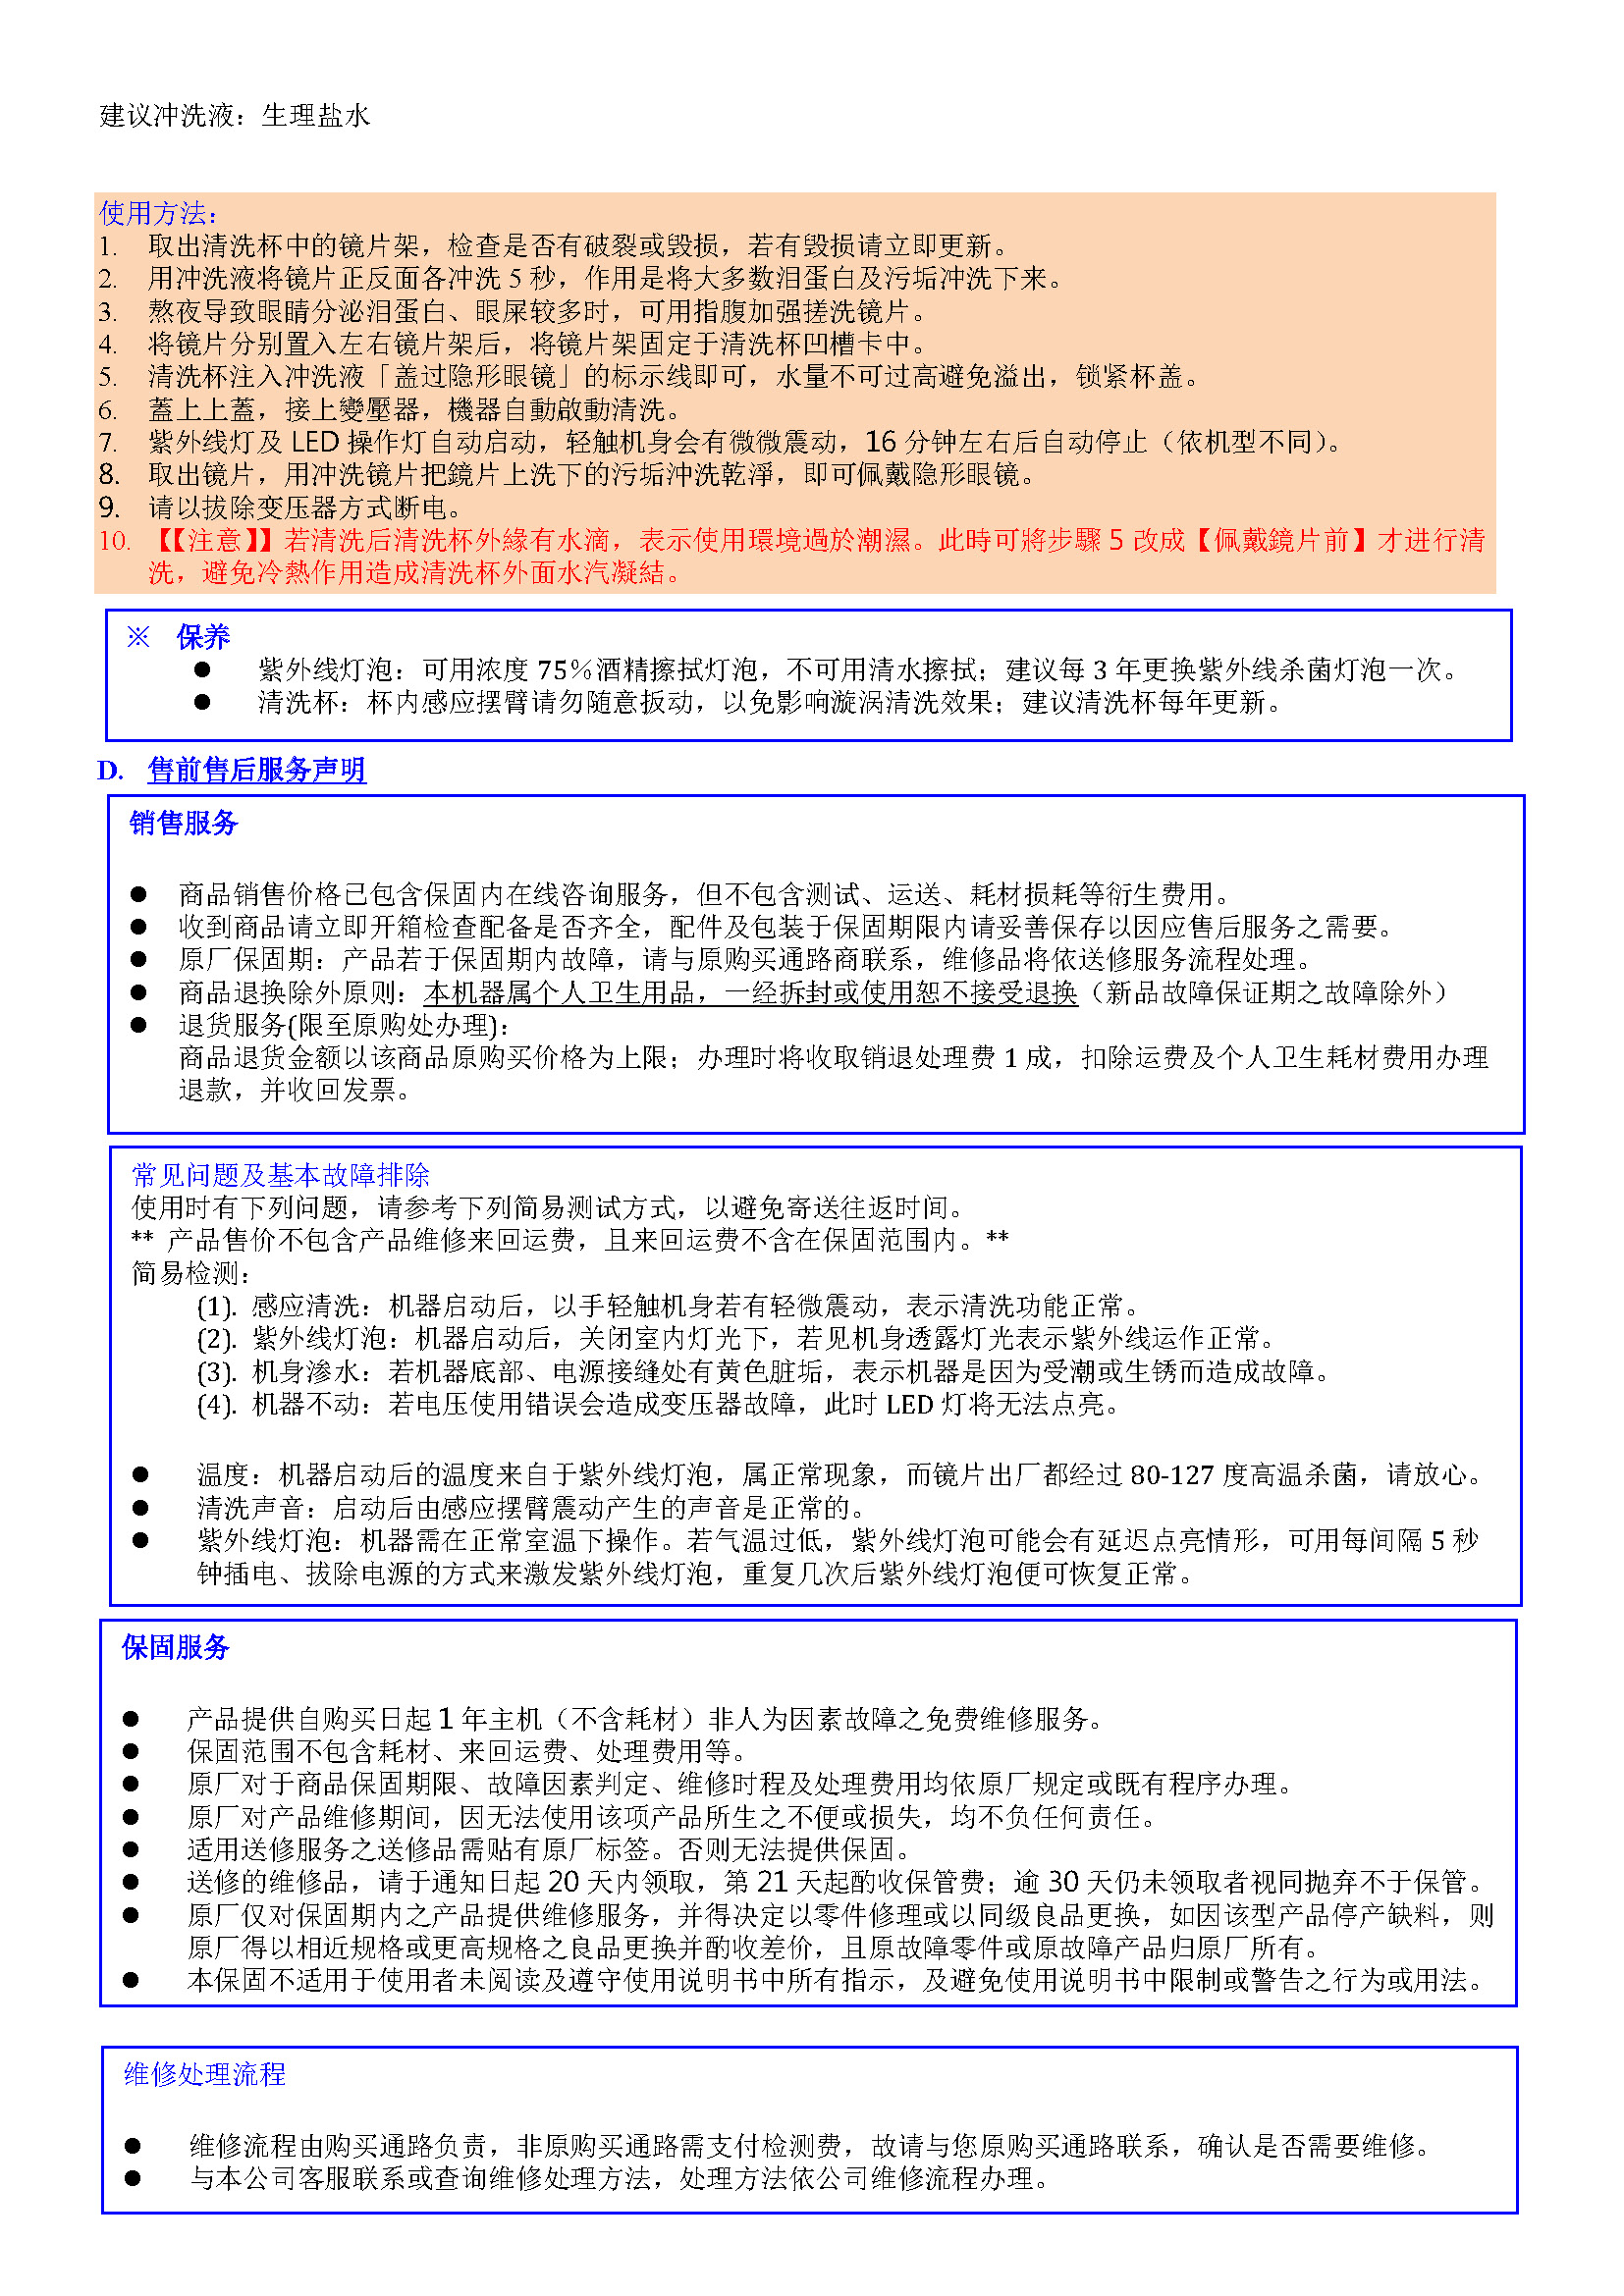 uvlotus user guide china-2